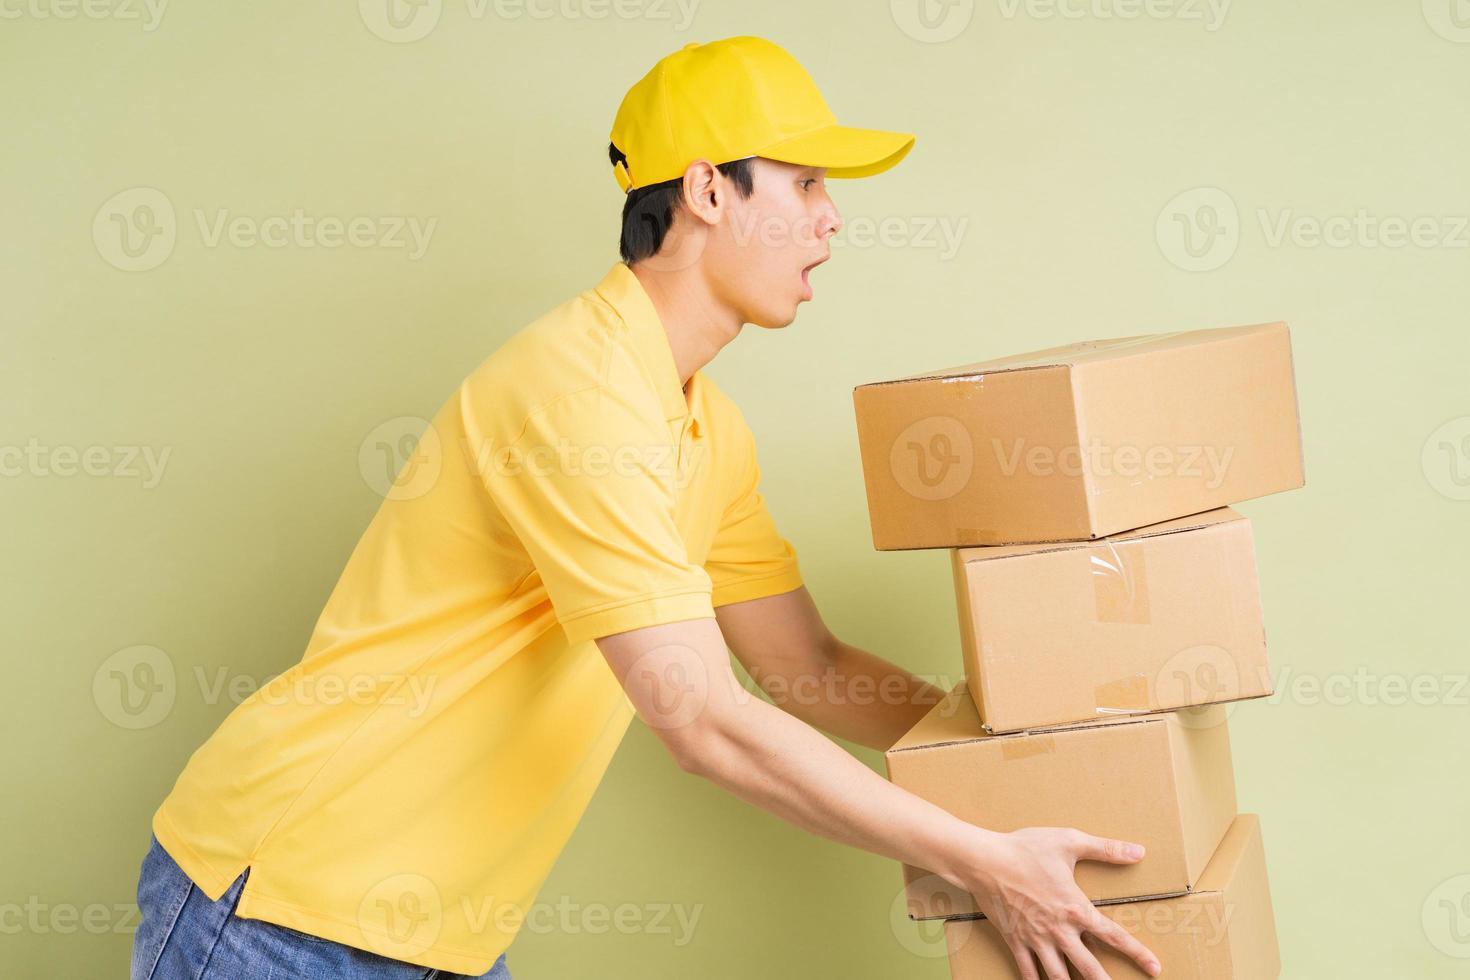 El repartidor asiático sostiene la caja con él y corre para entregar la mercancía. foto